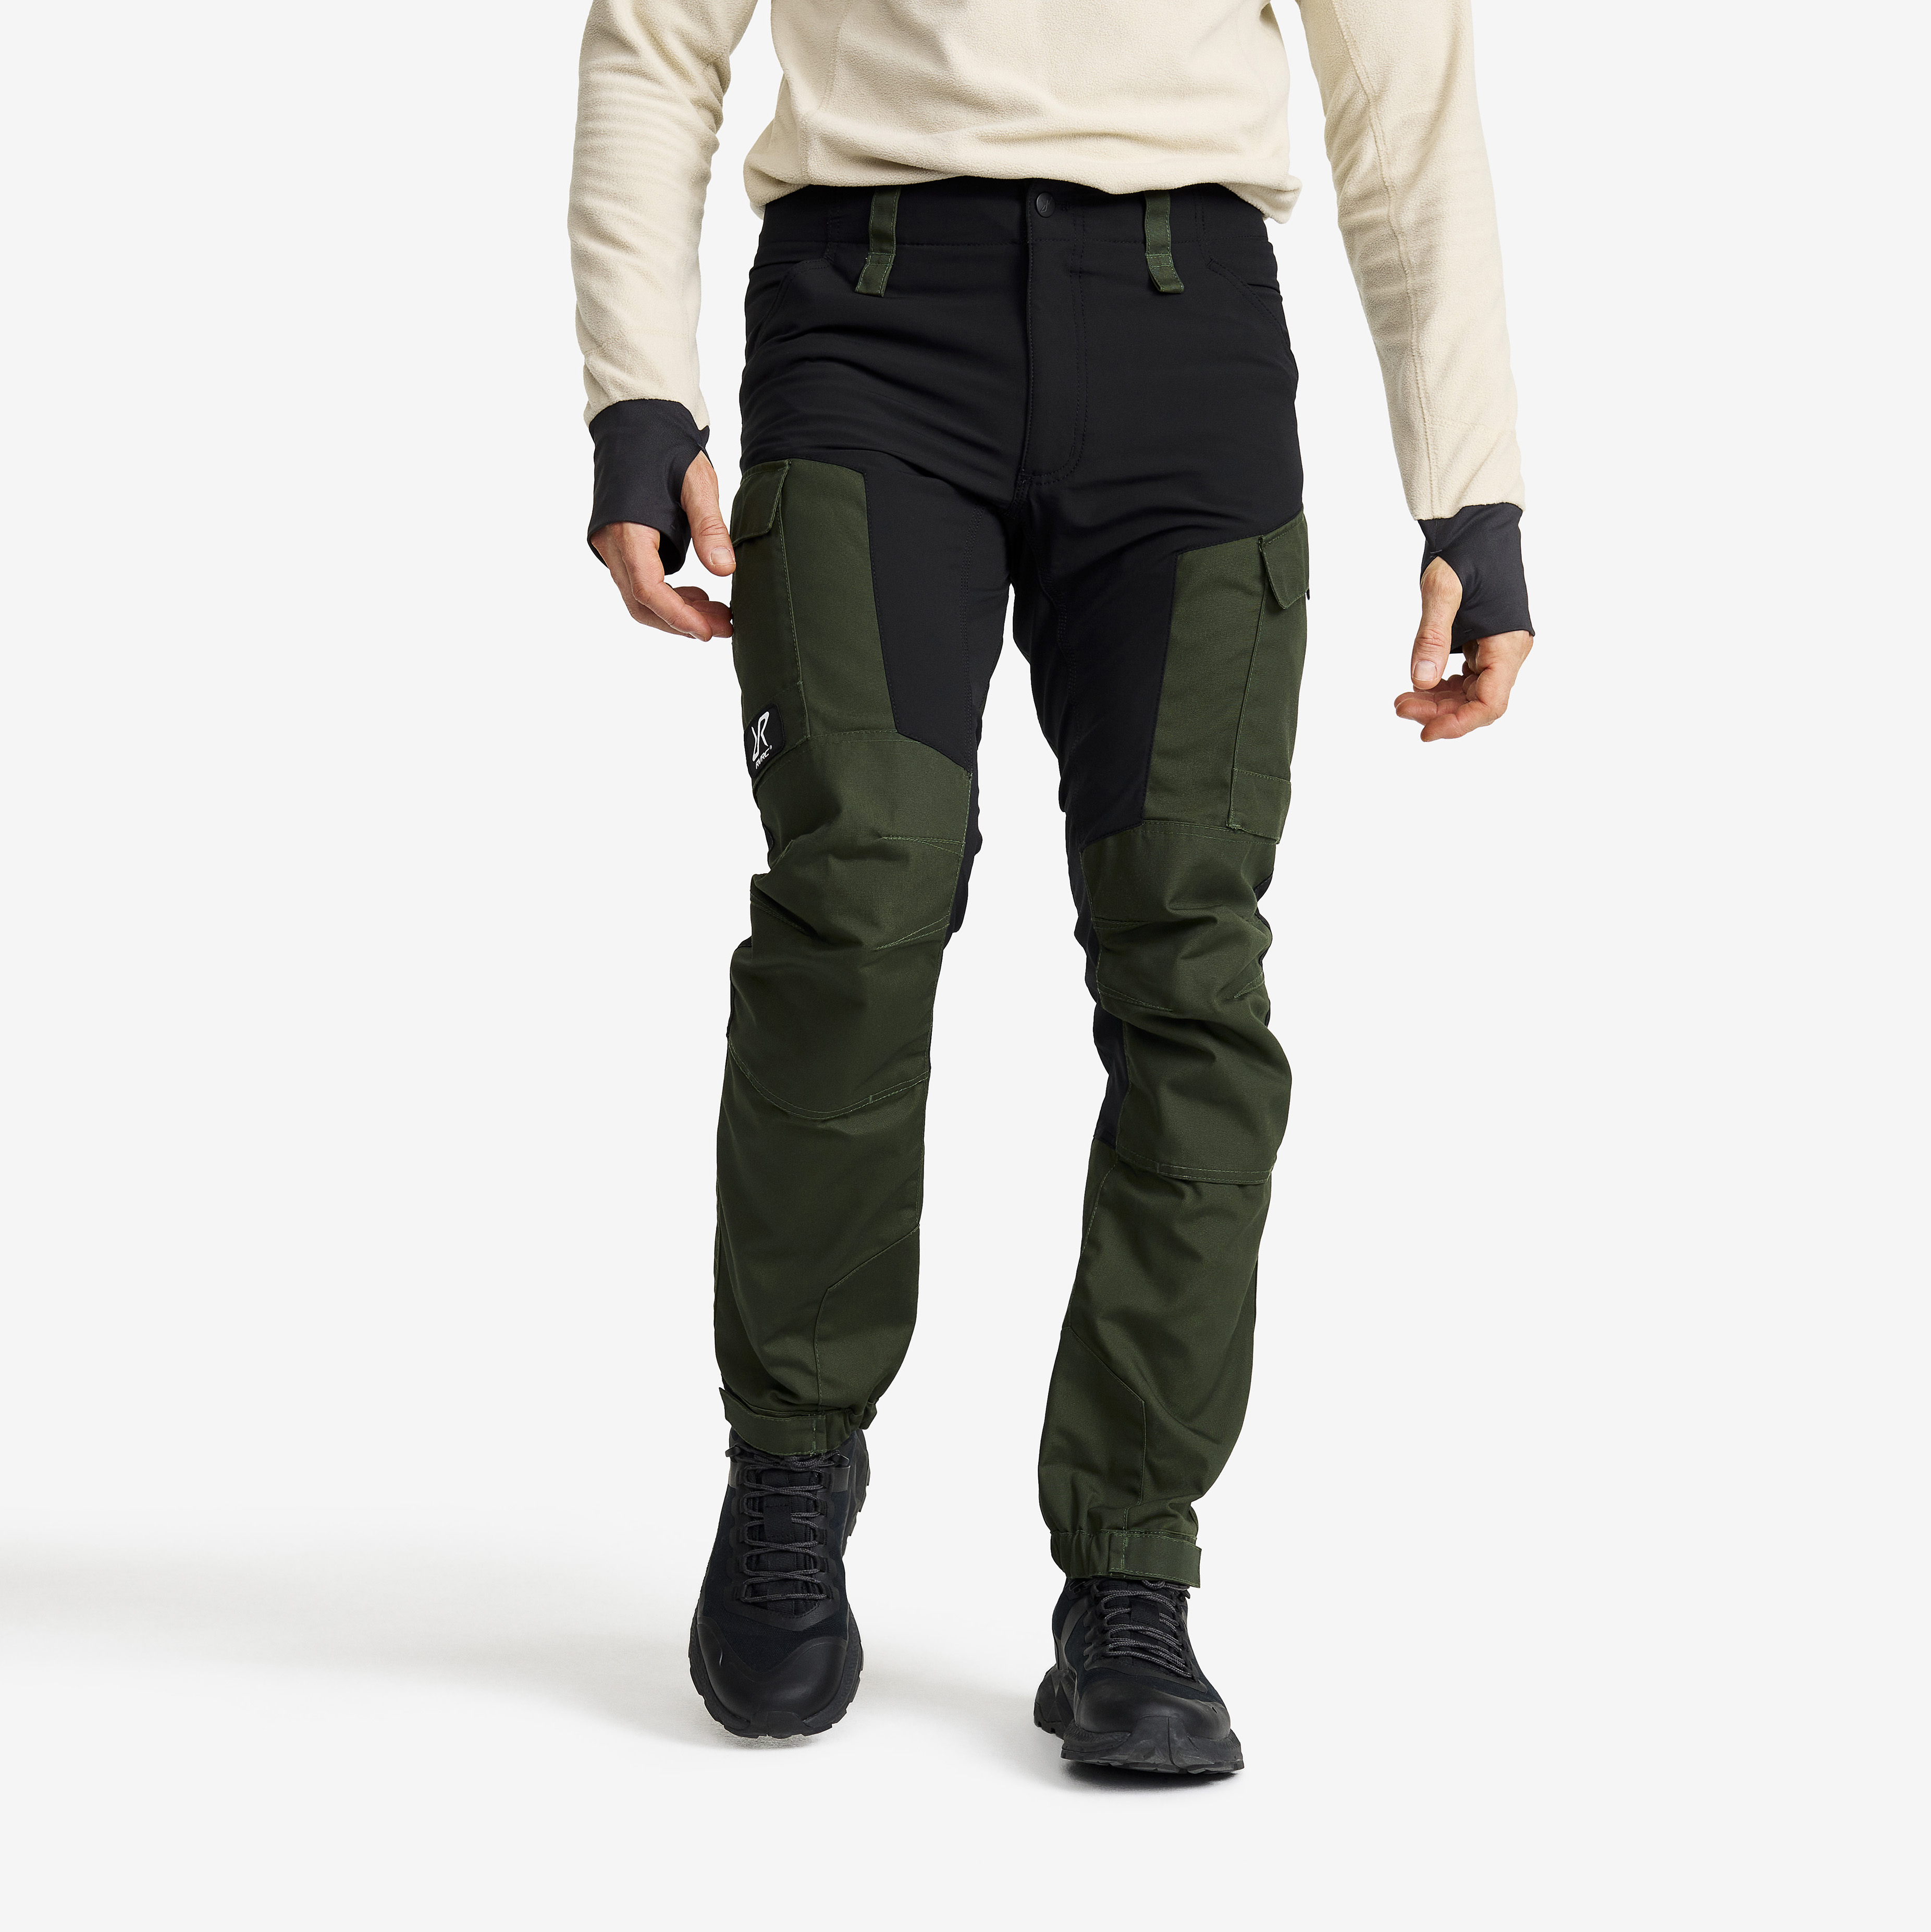 RVRC GP outdoorové kalhoty pro muže v zelené barvě